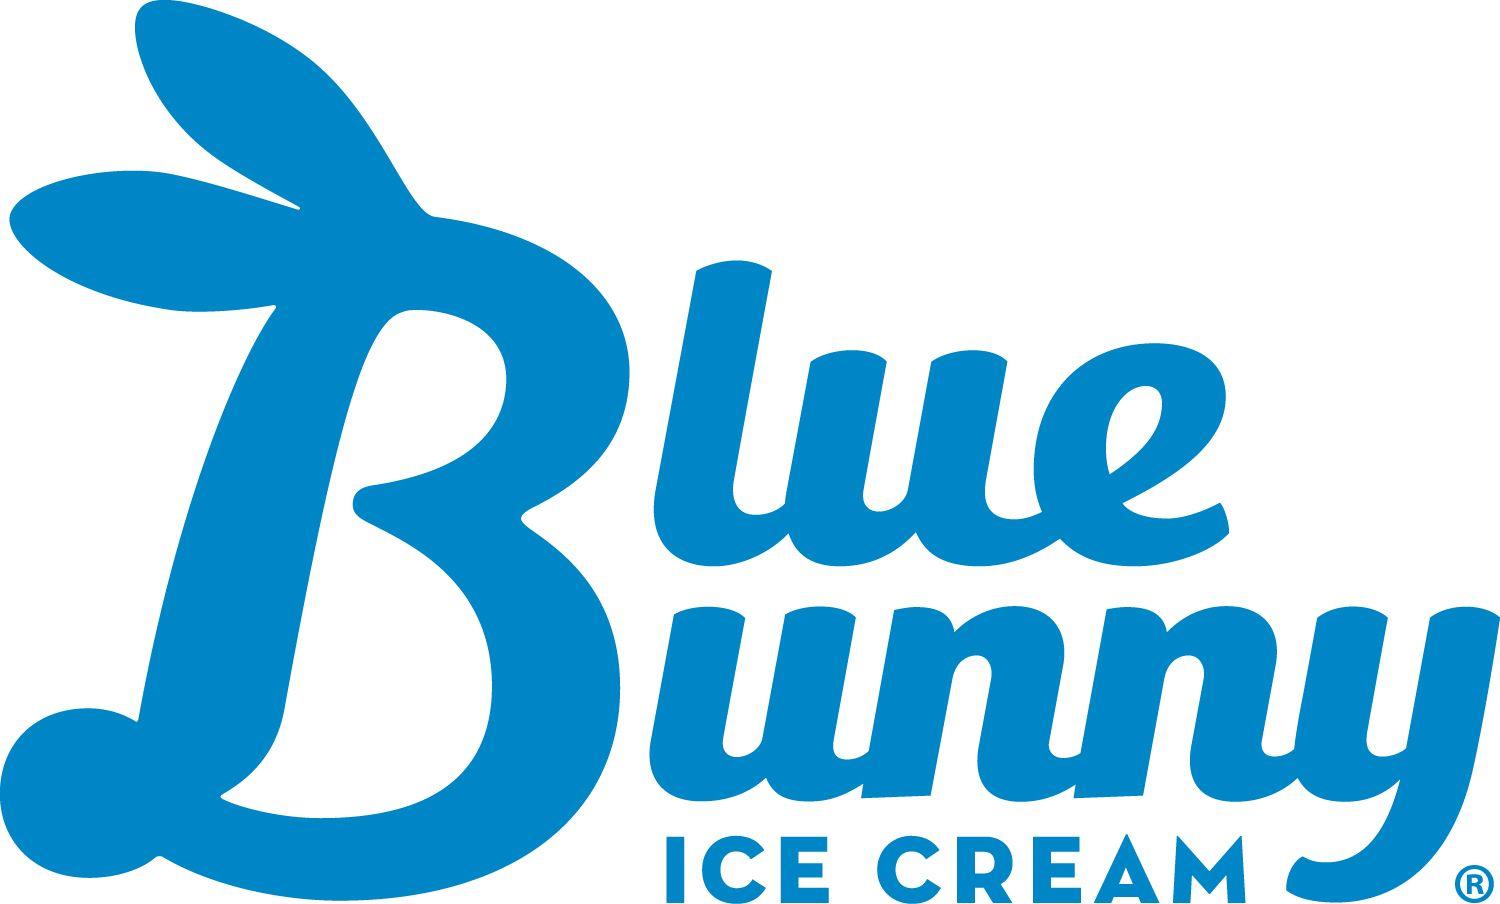 Ice Cream Company Logo - Company Logos